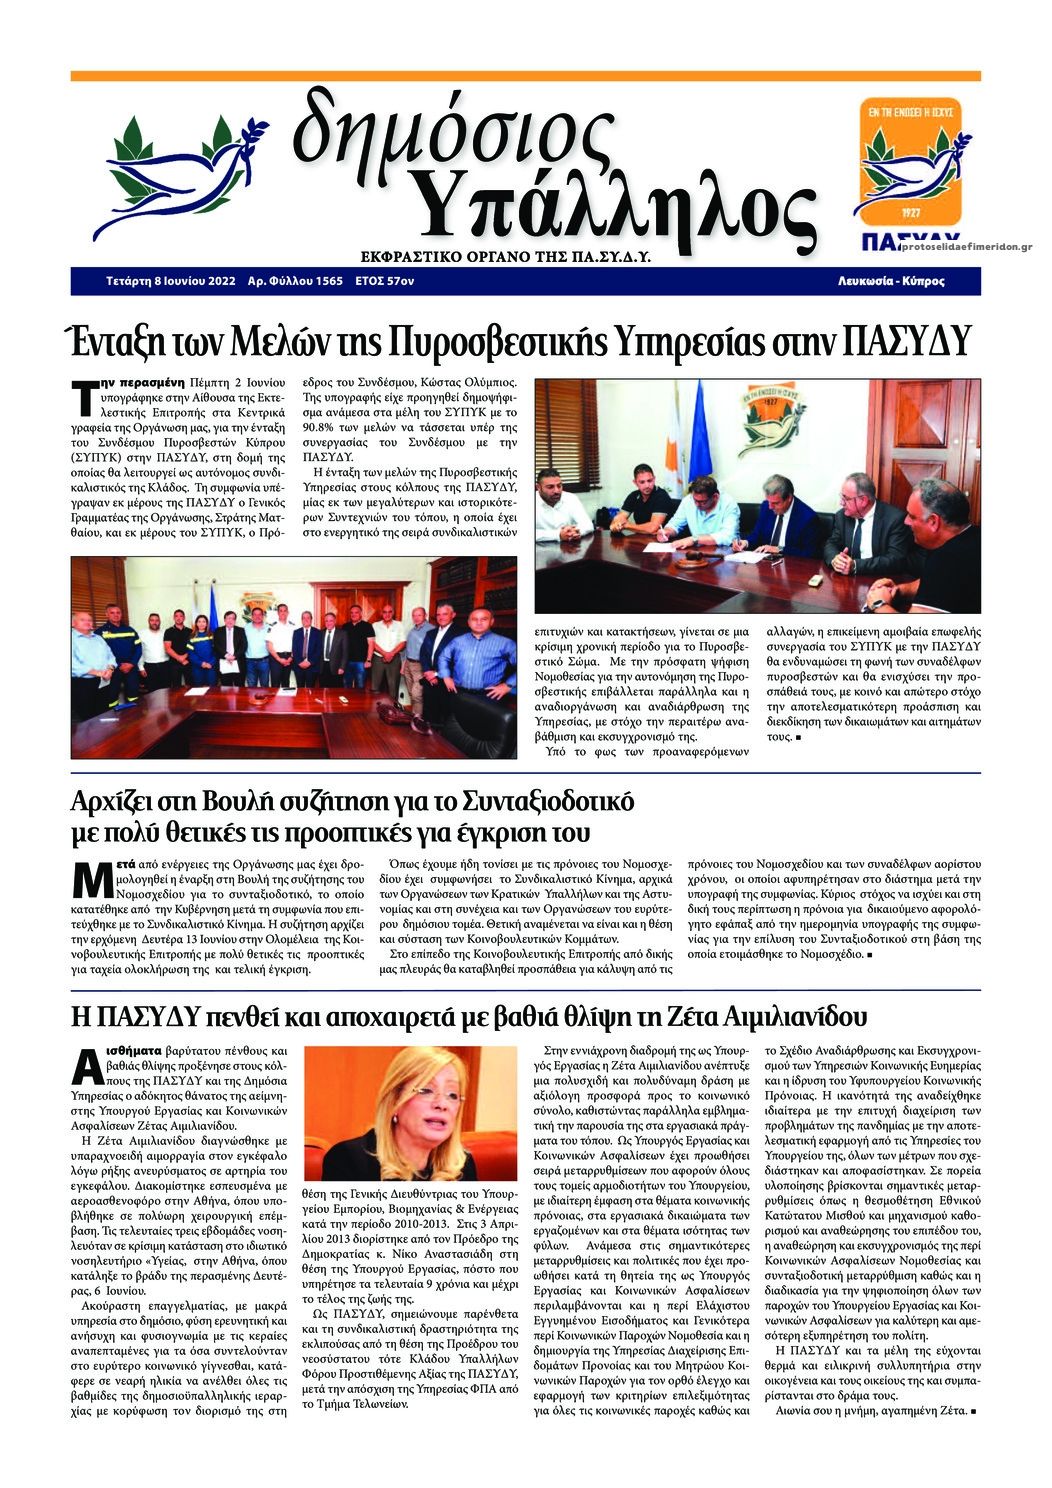 Πρωτοσέλιδο εφημερίδας Δημόσιος Υπάλληλος Κύπρου